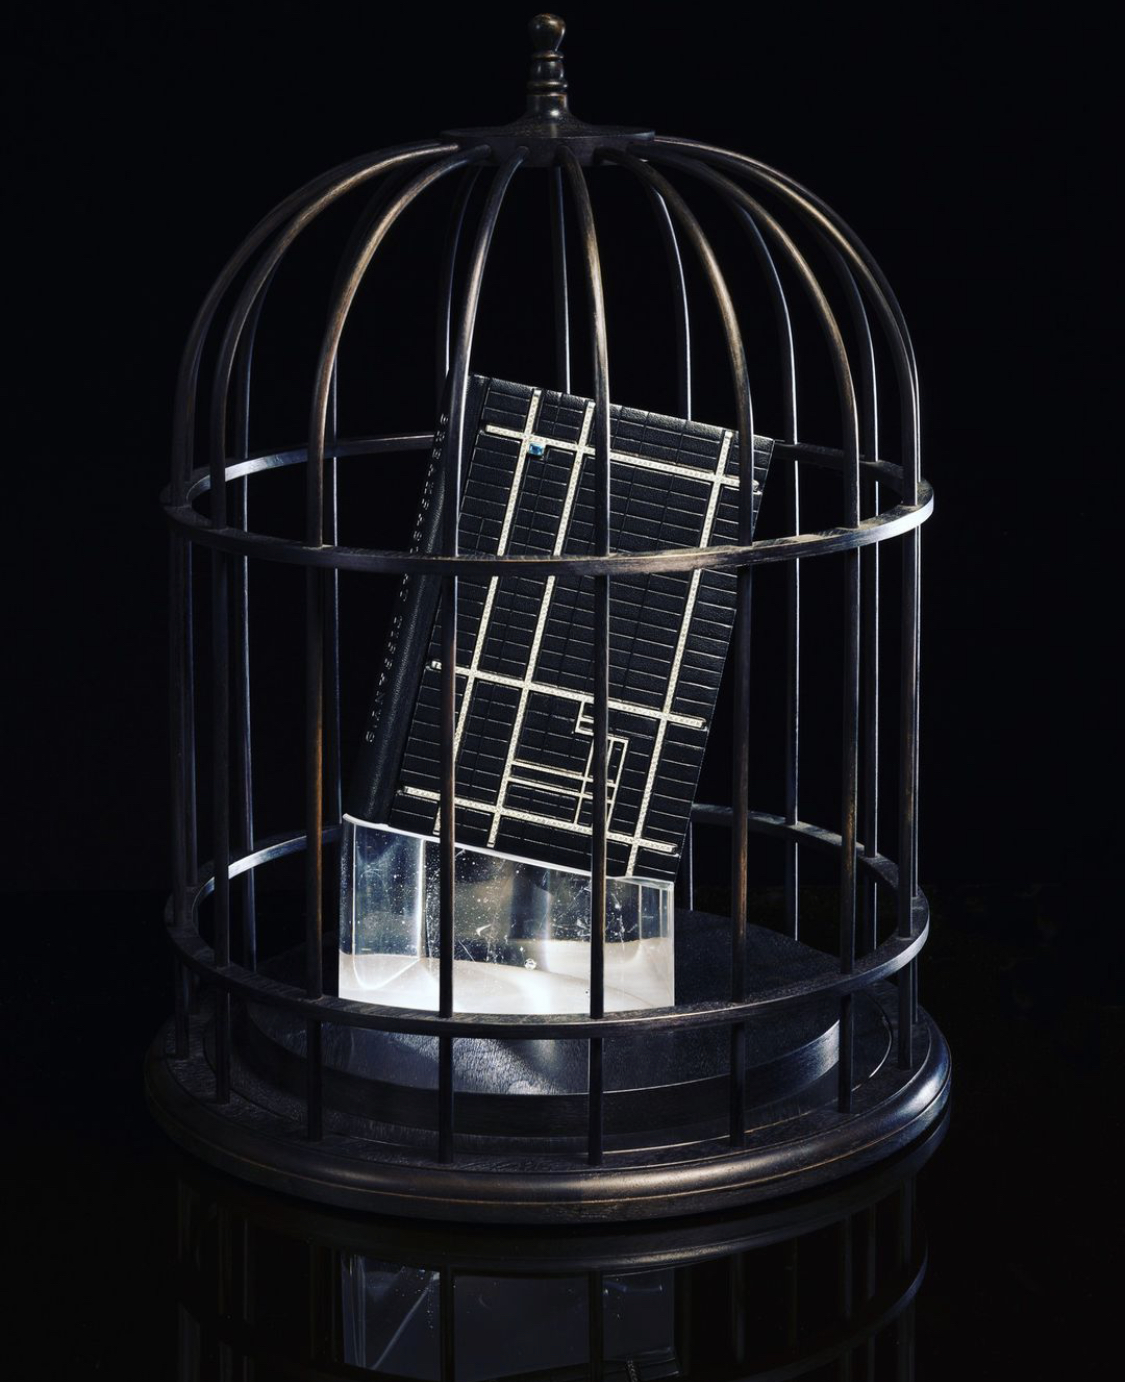 Птичья клетка как символическое воплощение главной идеи новеллы Трумена Капоте, впервые опубликованной в 1958 году